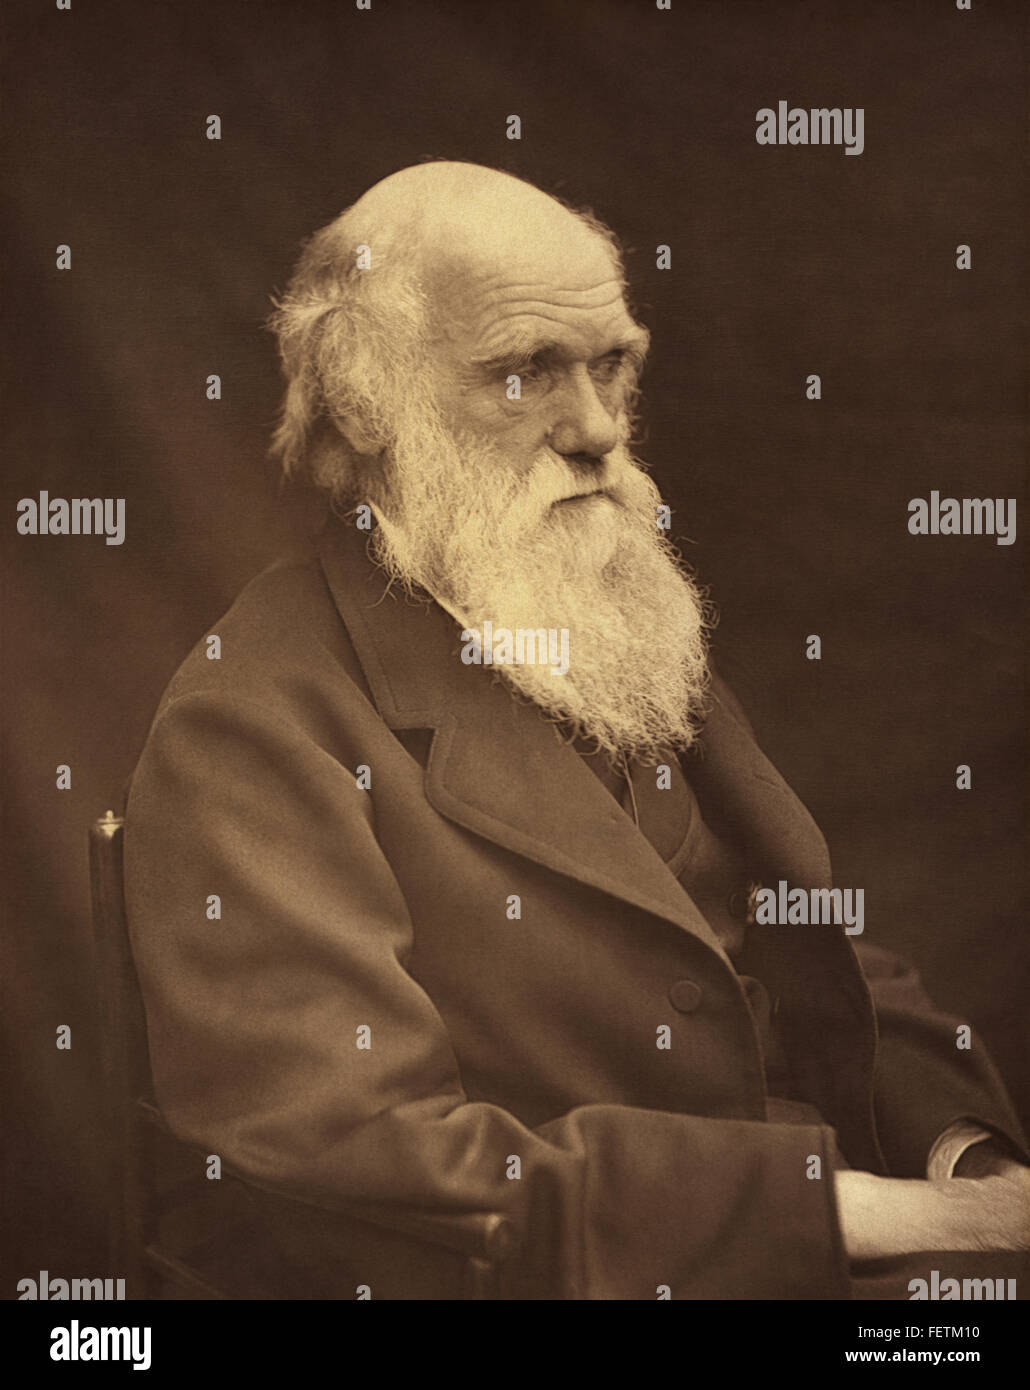 Charles Robert Darwin, evoluzionista e autore dell'origine delle specie, in una fotografia del 1878 di Leonard Darwin, figlio di Charles Darwin. Foto Stock